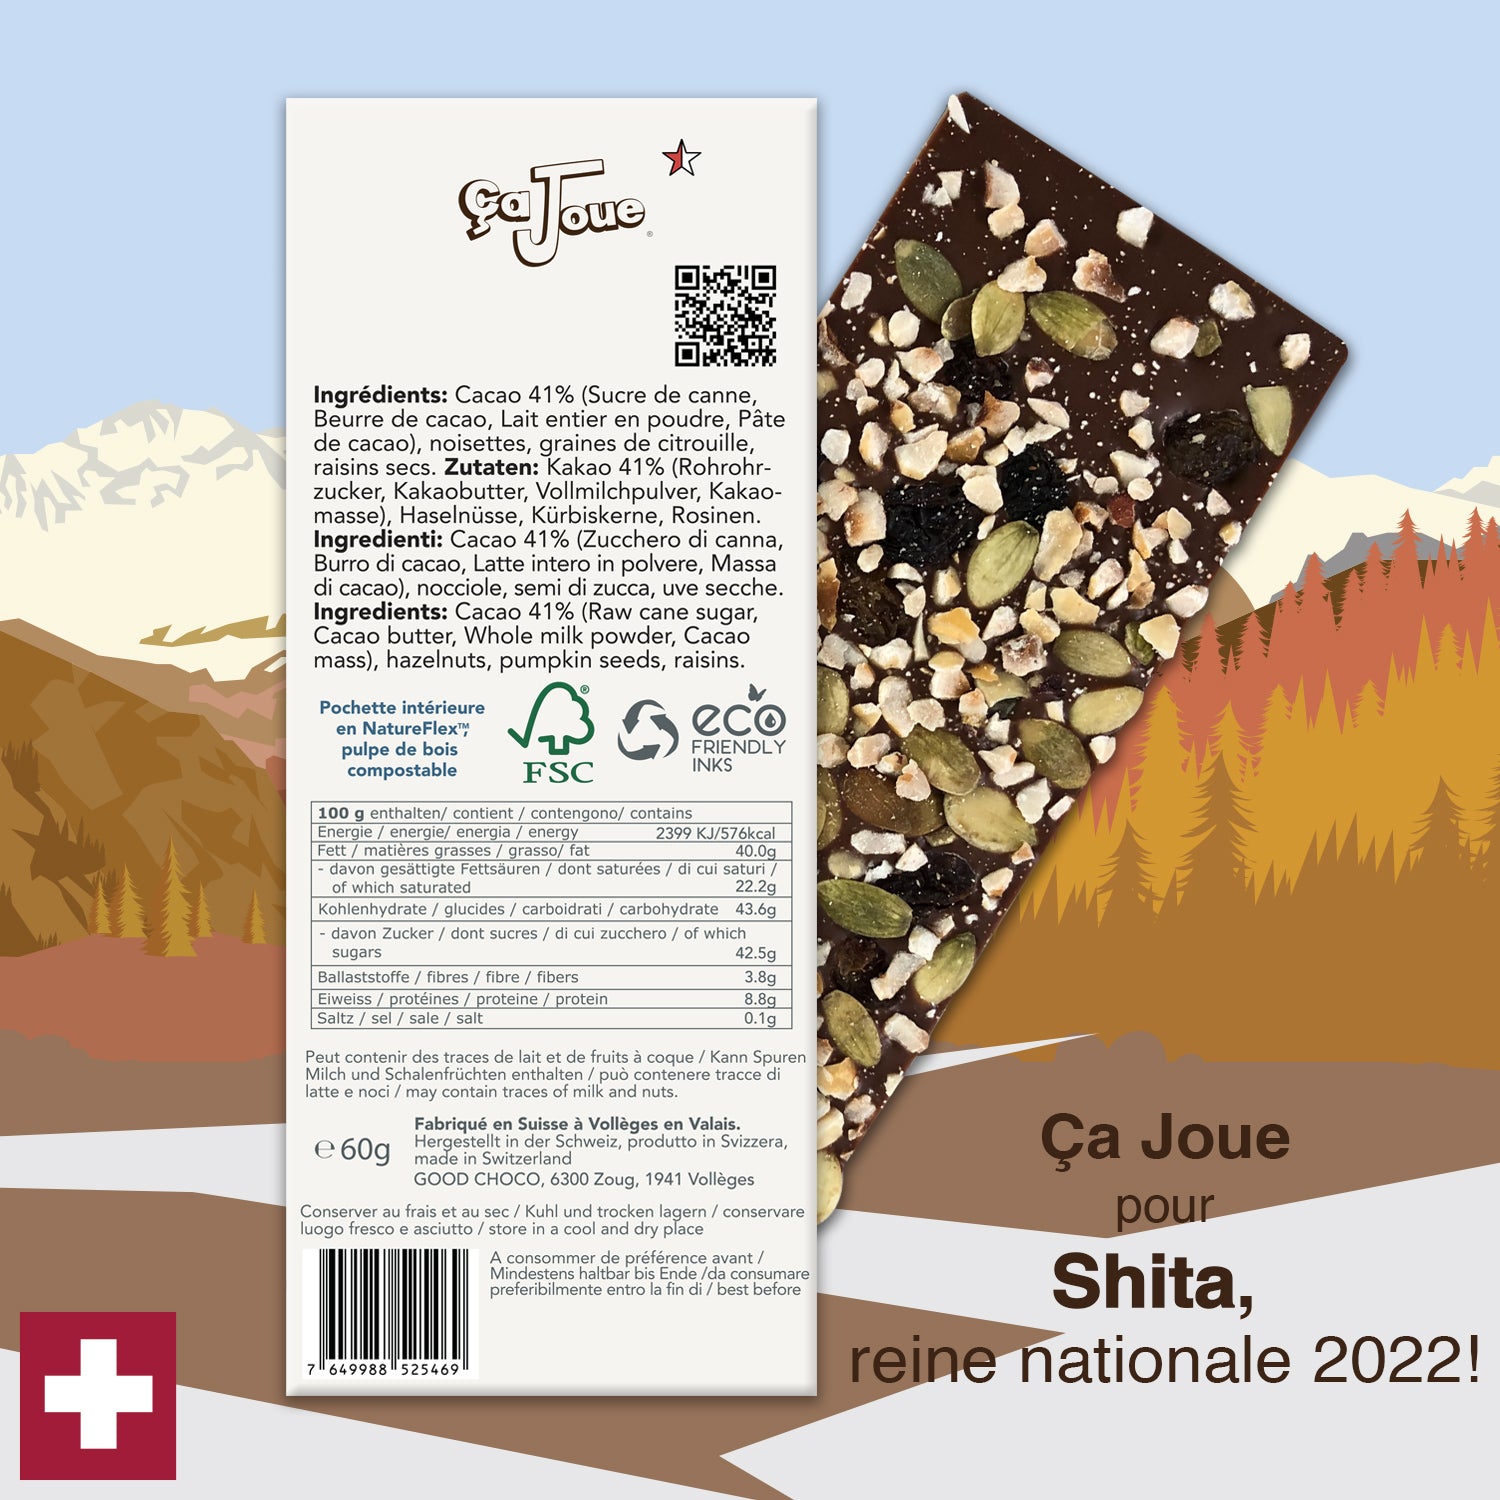 Ça Joue for Queen Shita (Ref-BL10) Milk Chocolate from Val de Bagnes